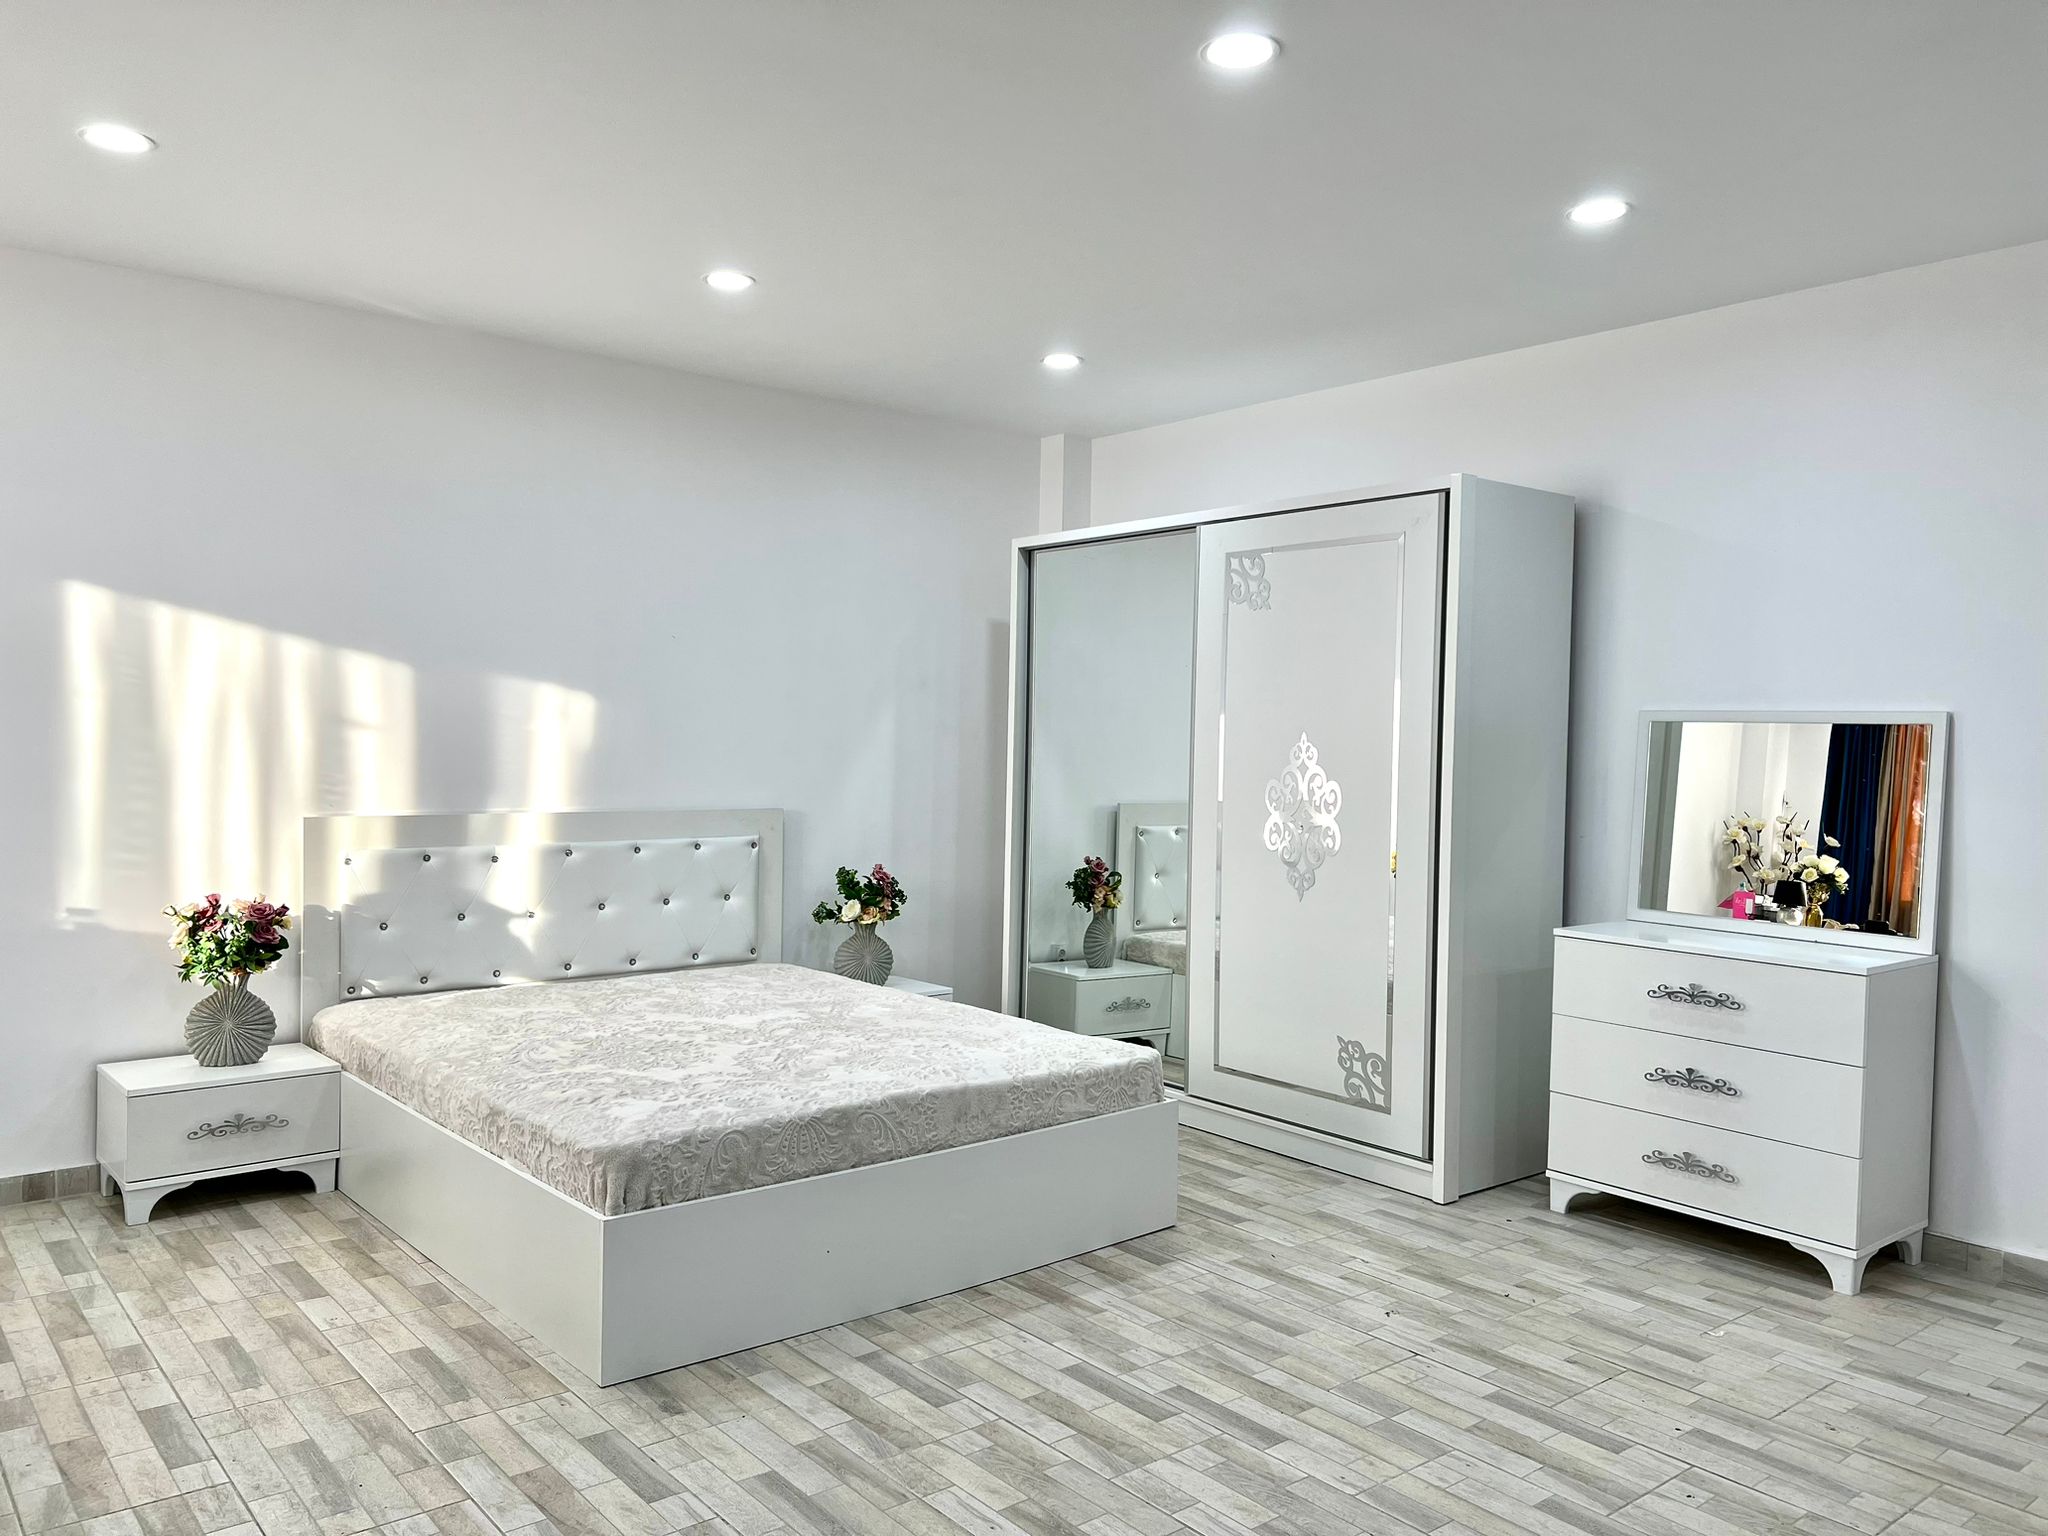 Dormitor Milano, culoare alb, cu pat tapitat 160 x 200 cm, dulap cu 2 usi, comoda cu oglinda, 2 noptiere